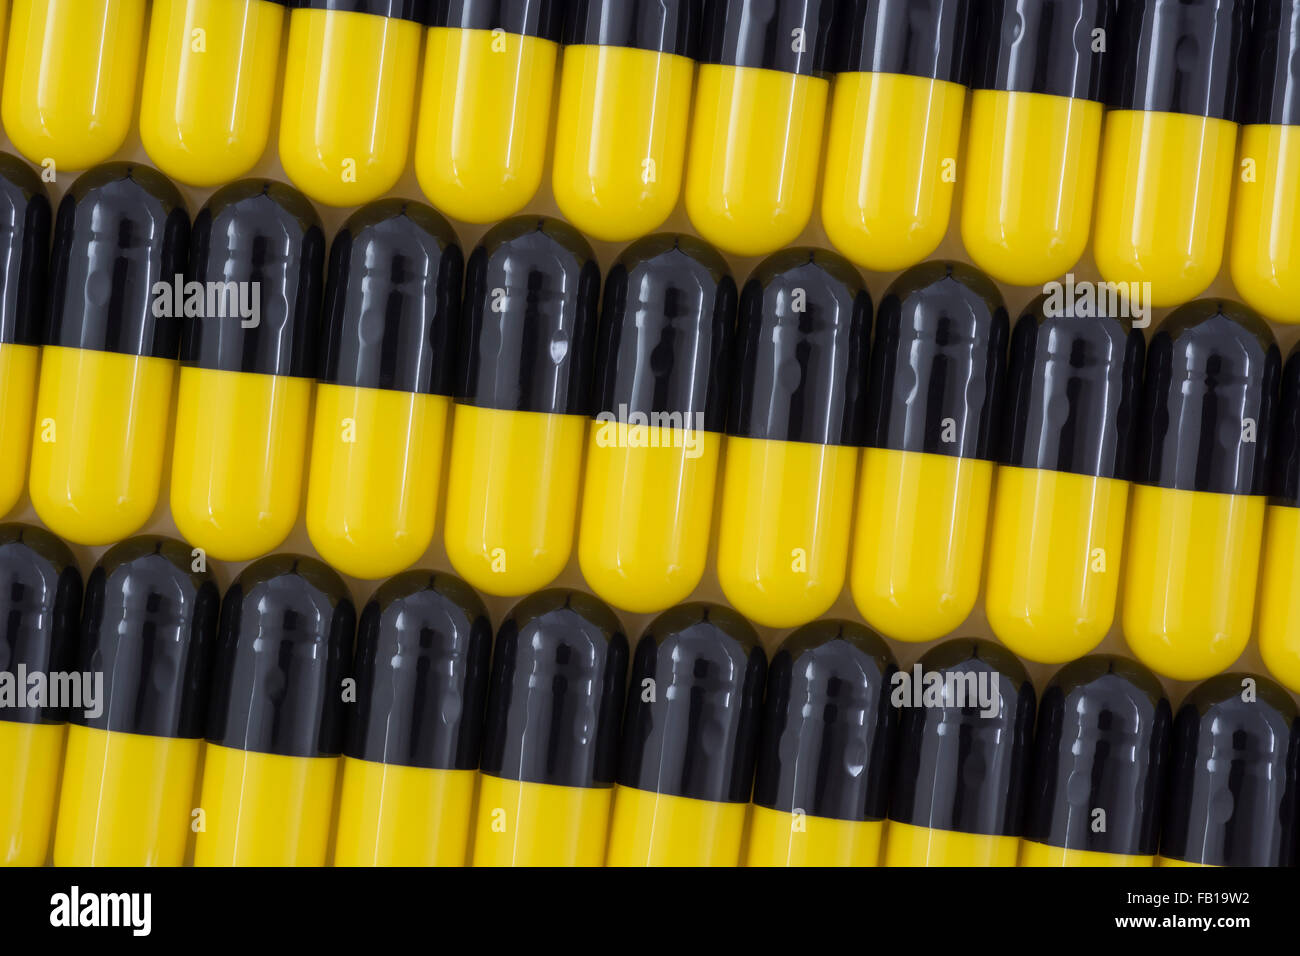 Primer plano de pastillas - forma de cápsula hecha de gelatina. Pastillas amarillas / negras. Metáfora tomando a las compañías farmacéuticas estadounidenses sobre los altos precios de los medicamentos, ensayos de drogas. Foto de stock